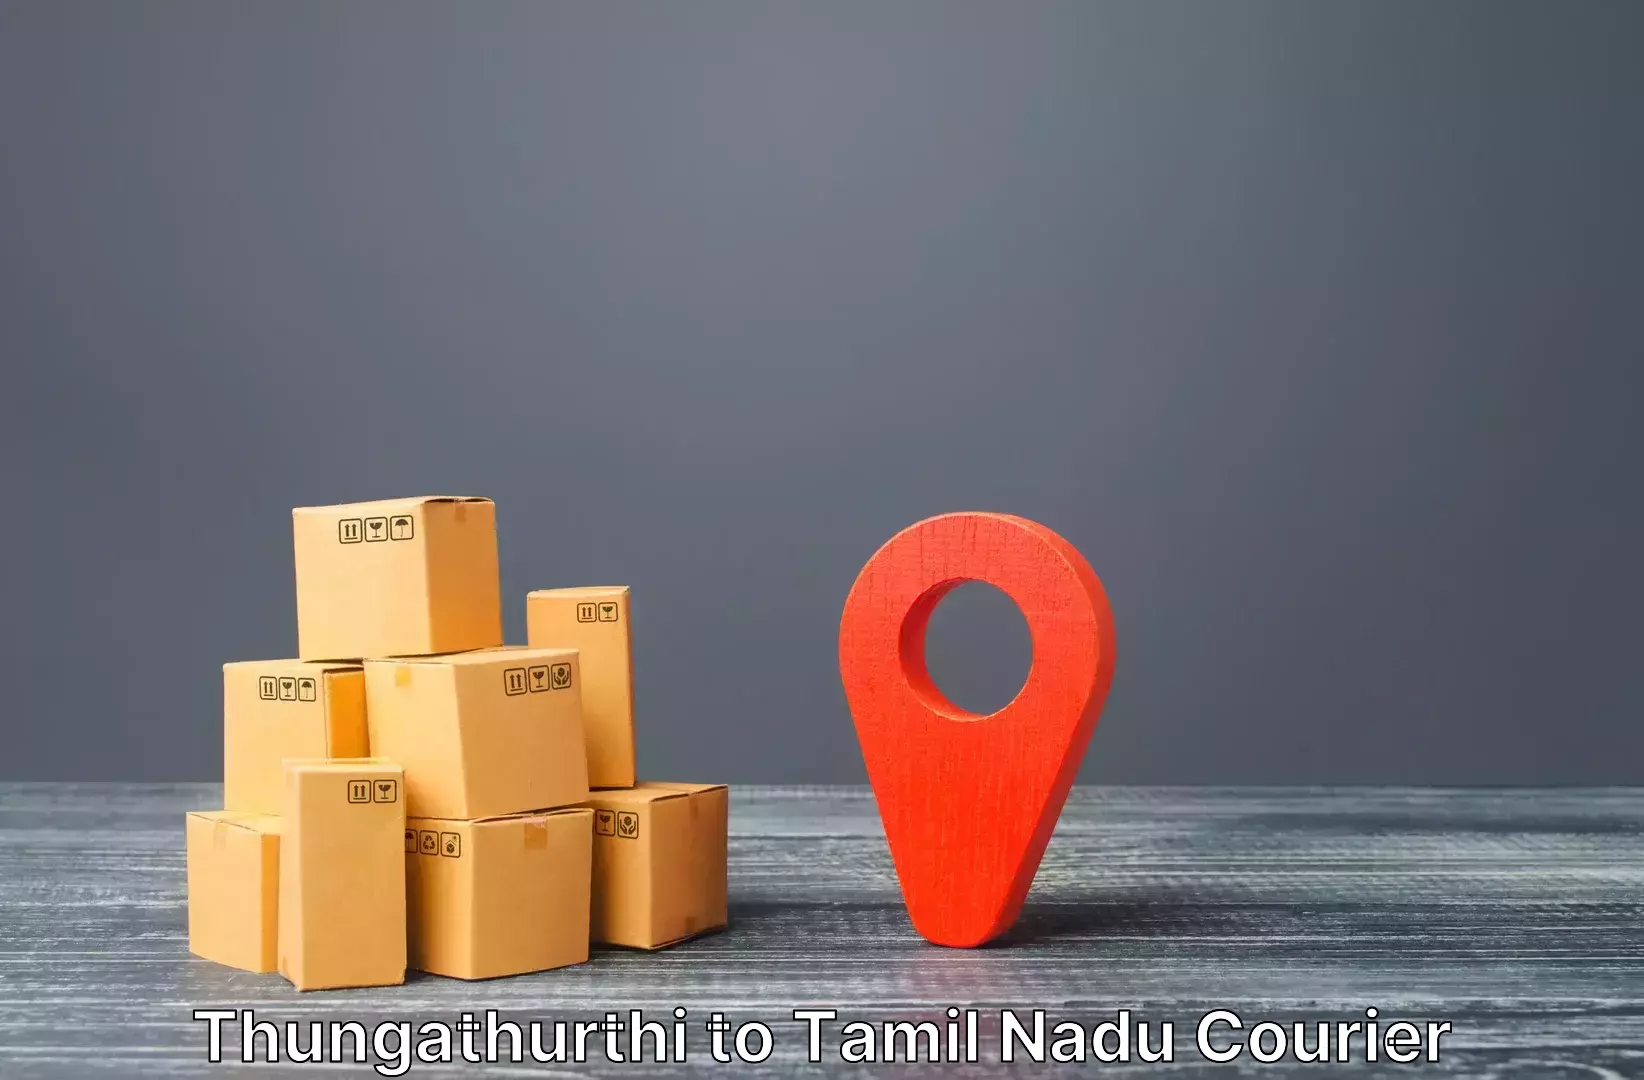 Luggage transfer service Thungathurthi to Tamil Nadu